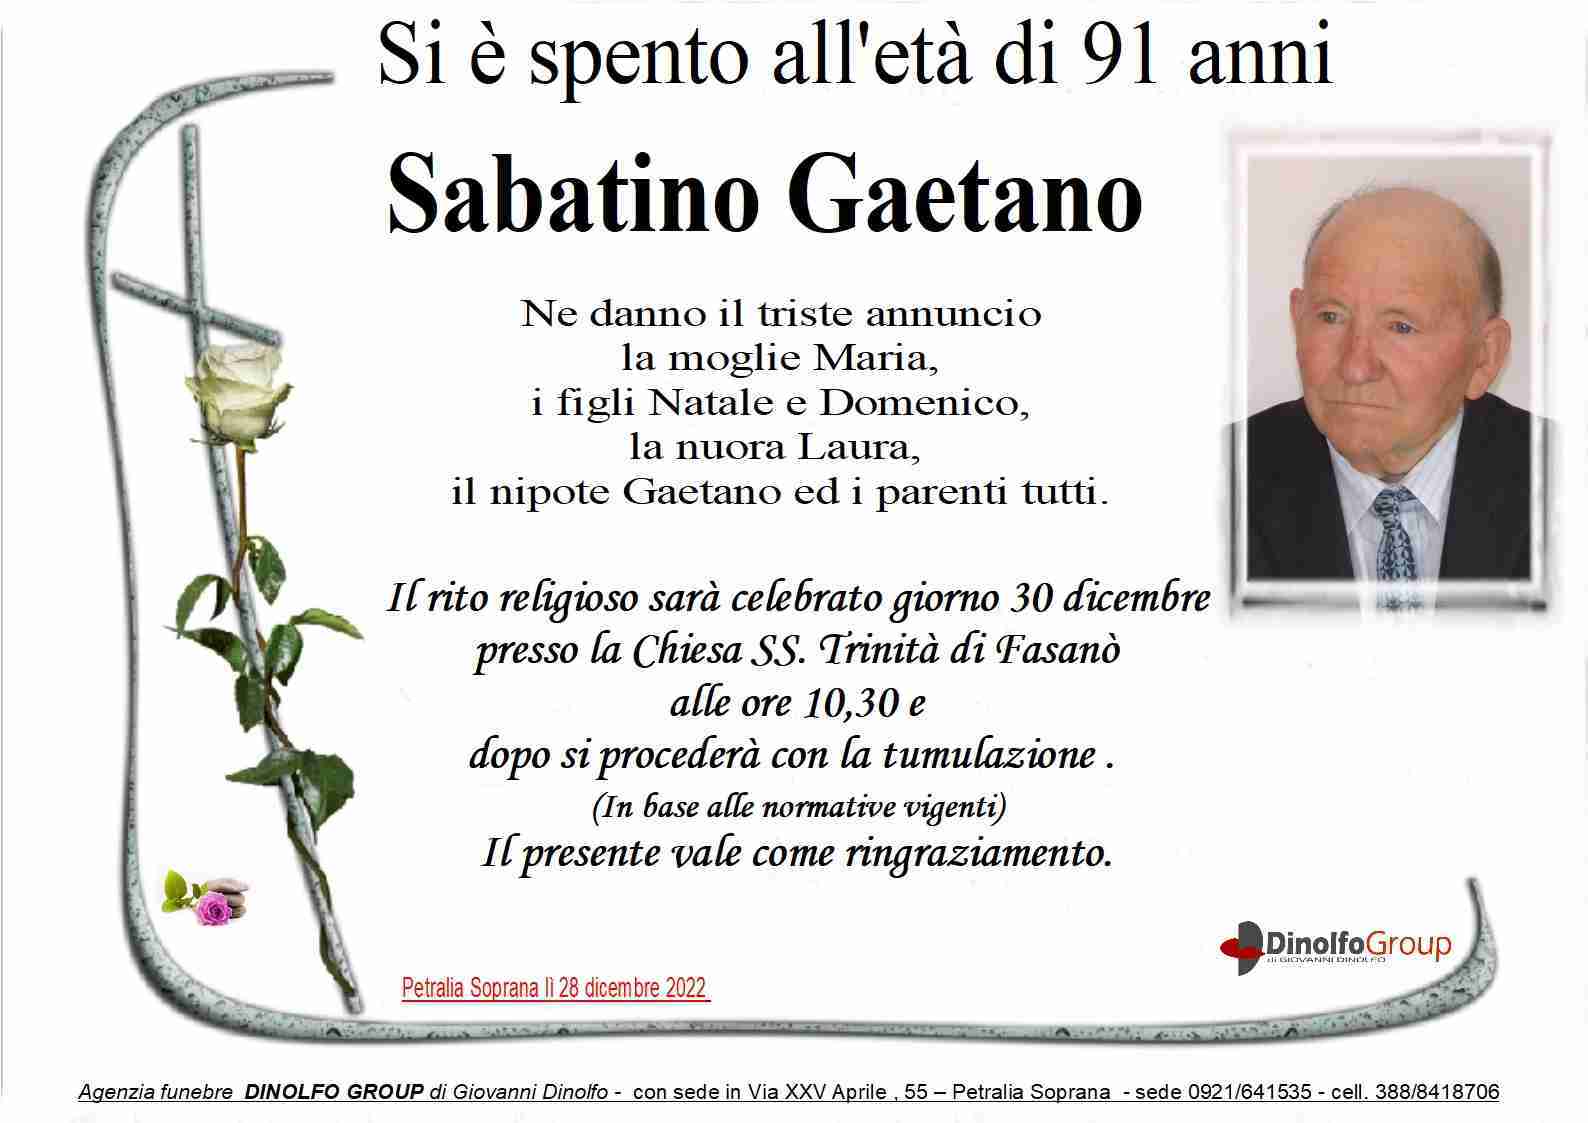 Gaetano Sabatino